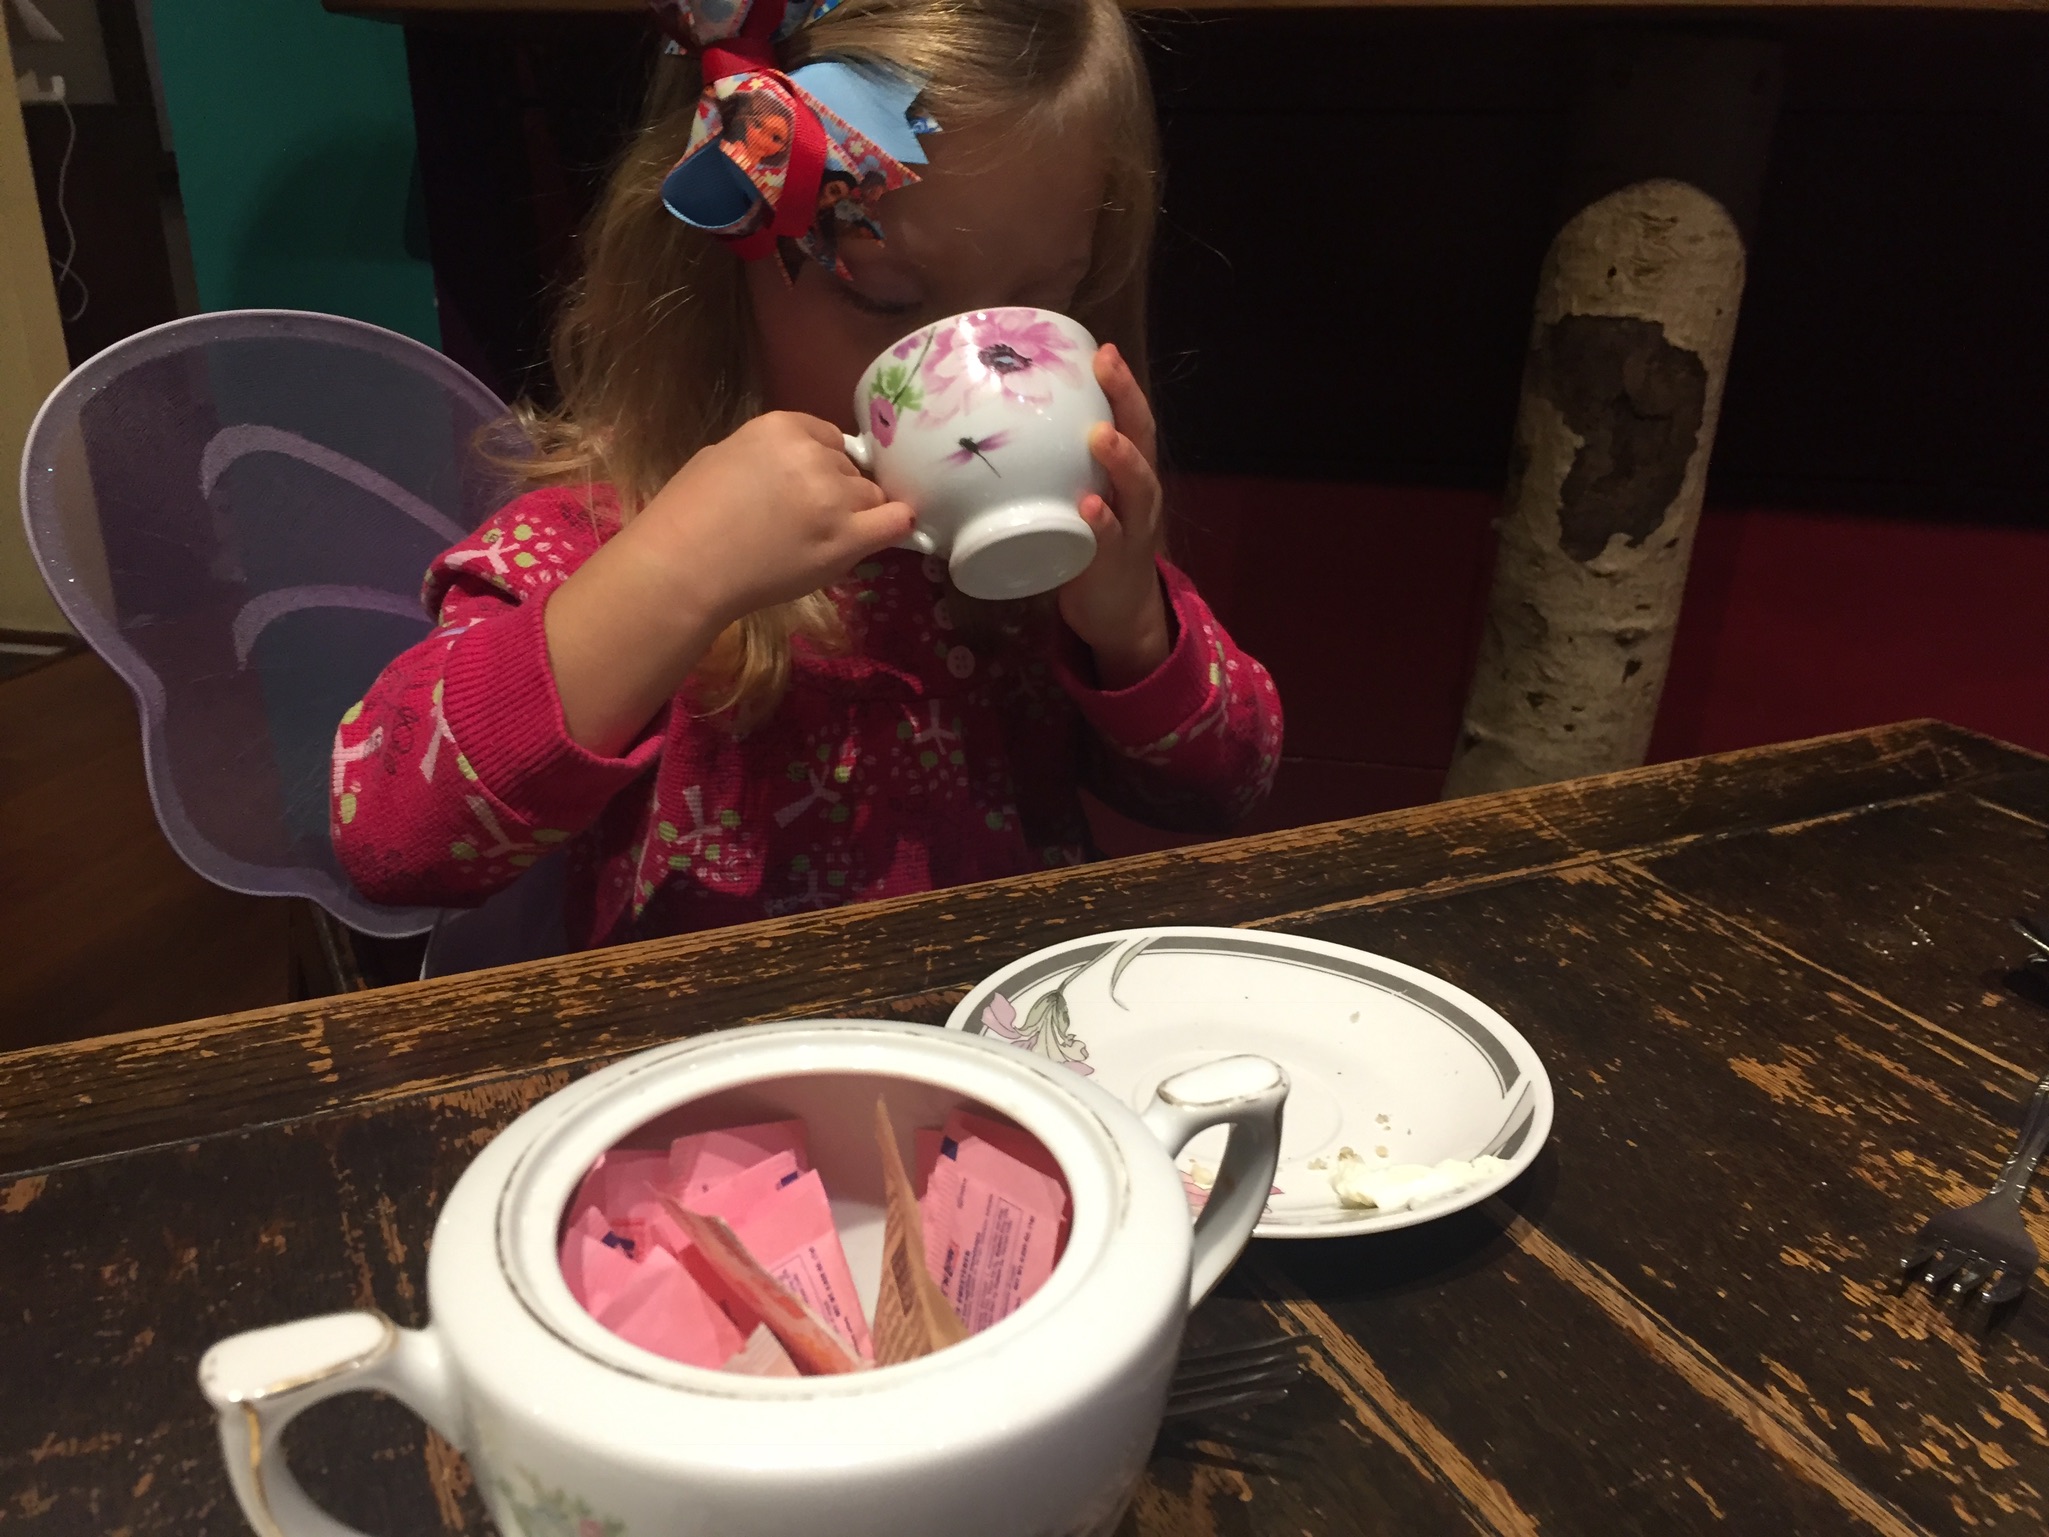  Enjoying tea over brunch at Alice's Tea Cup. 